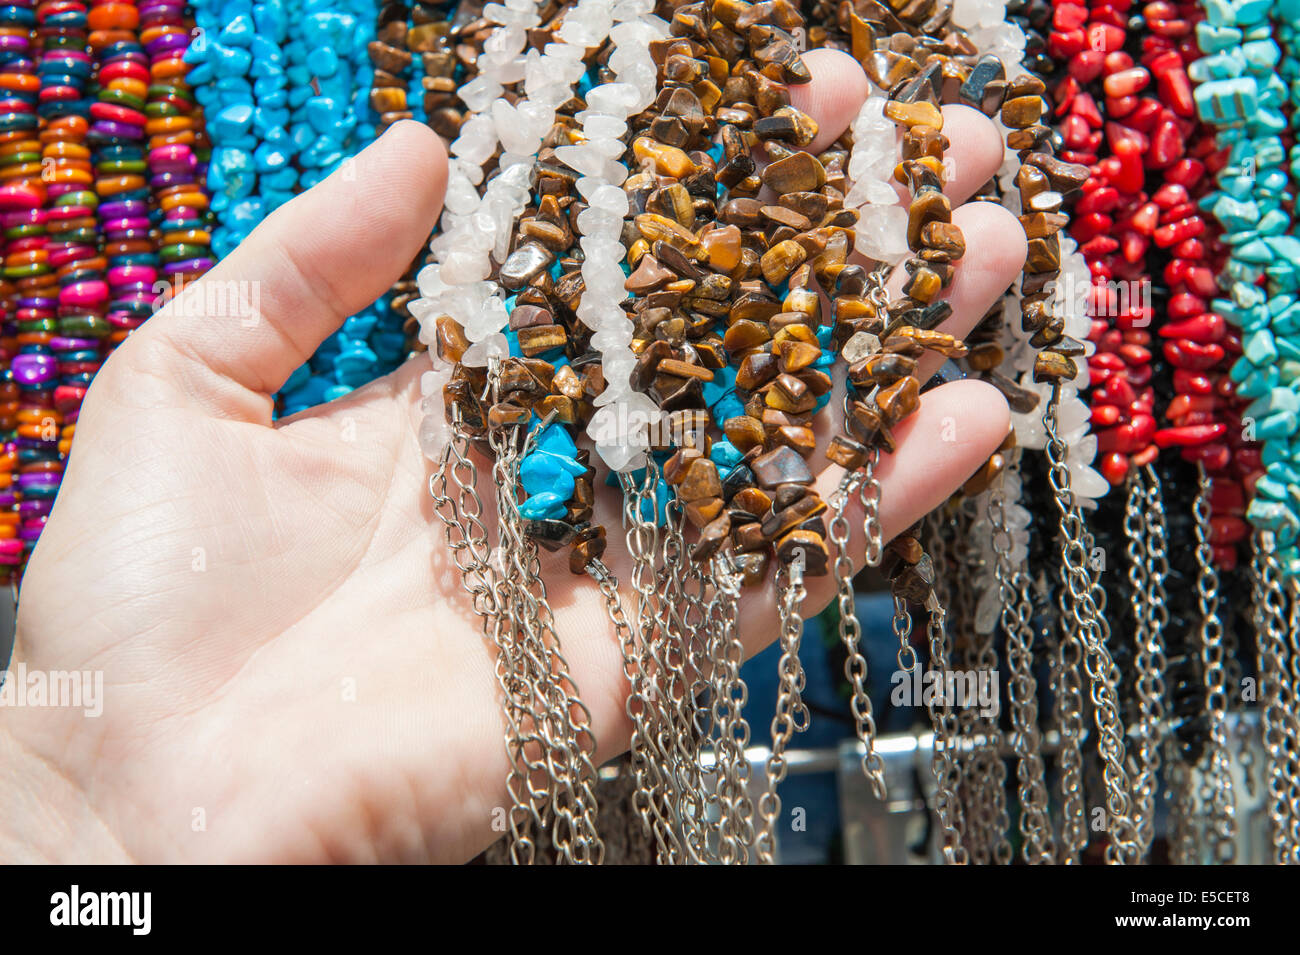 Hand holding shopping bijoux en pierre de couleur ornée en ligne au market stall Banque D'Images